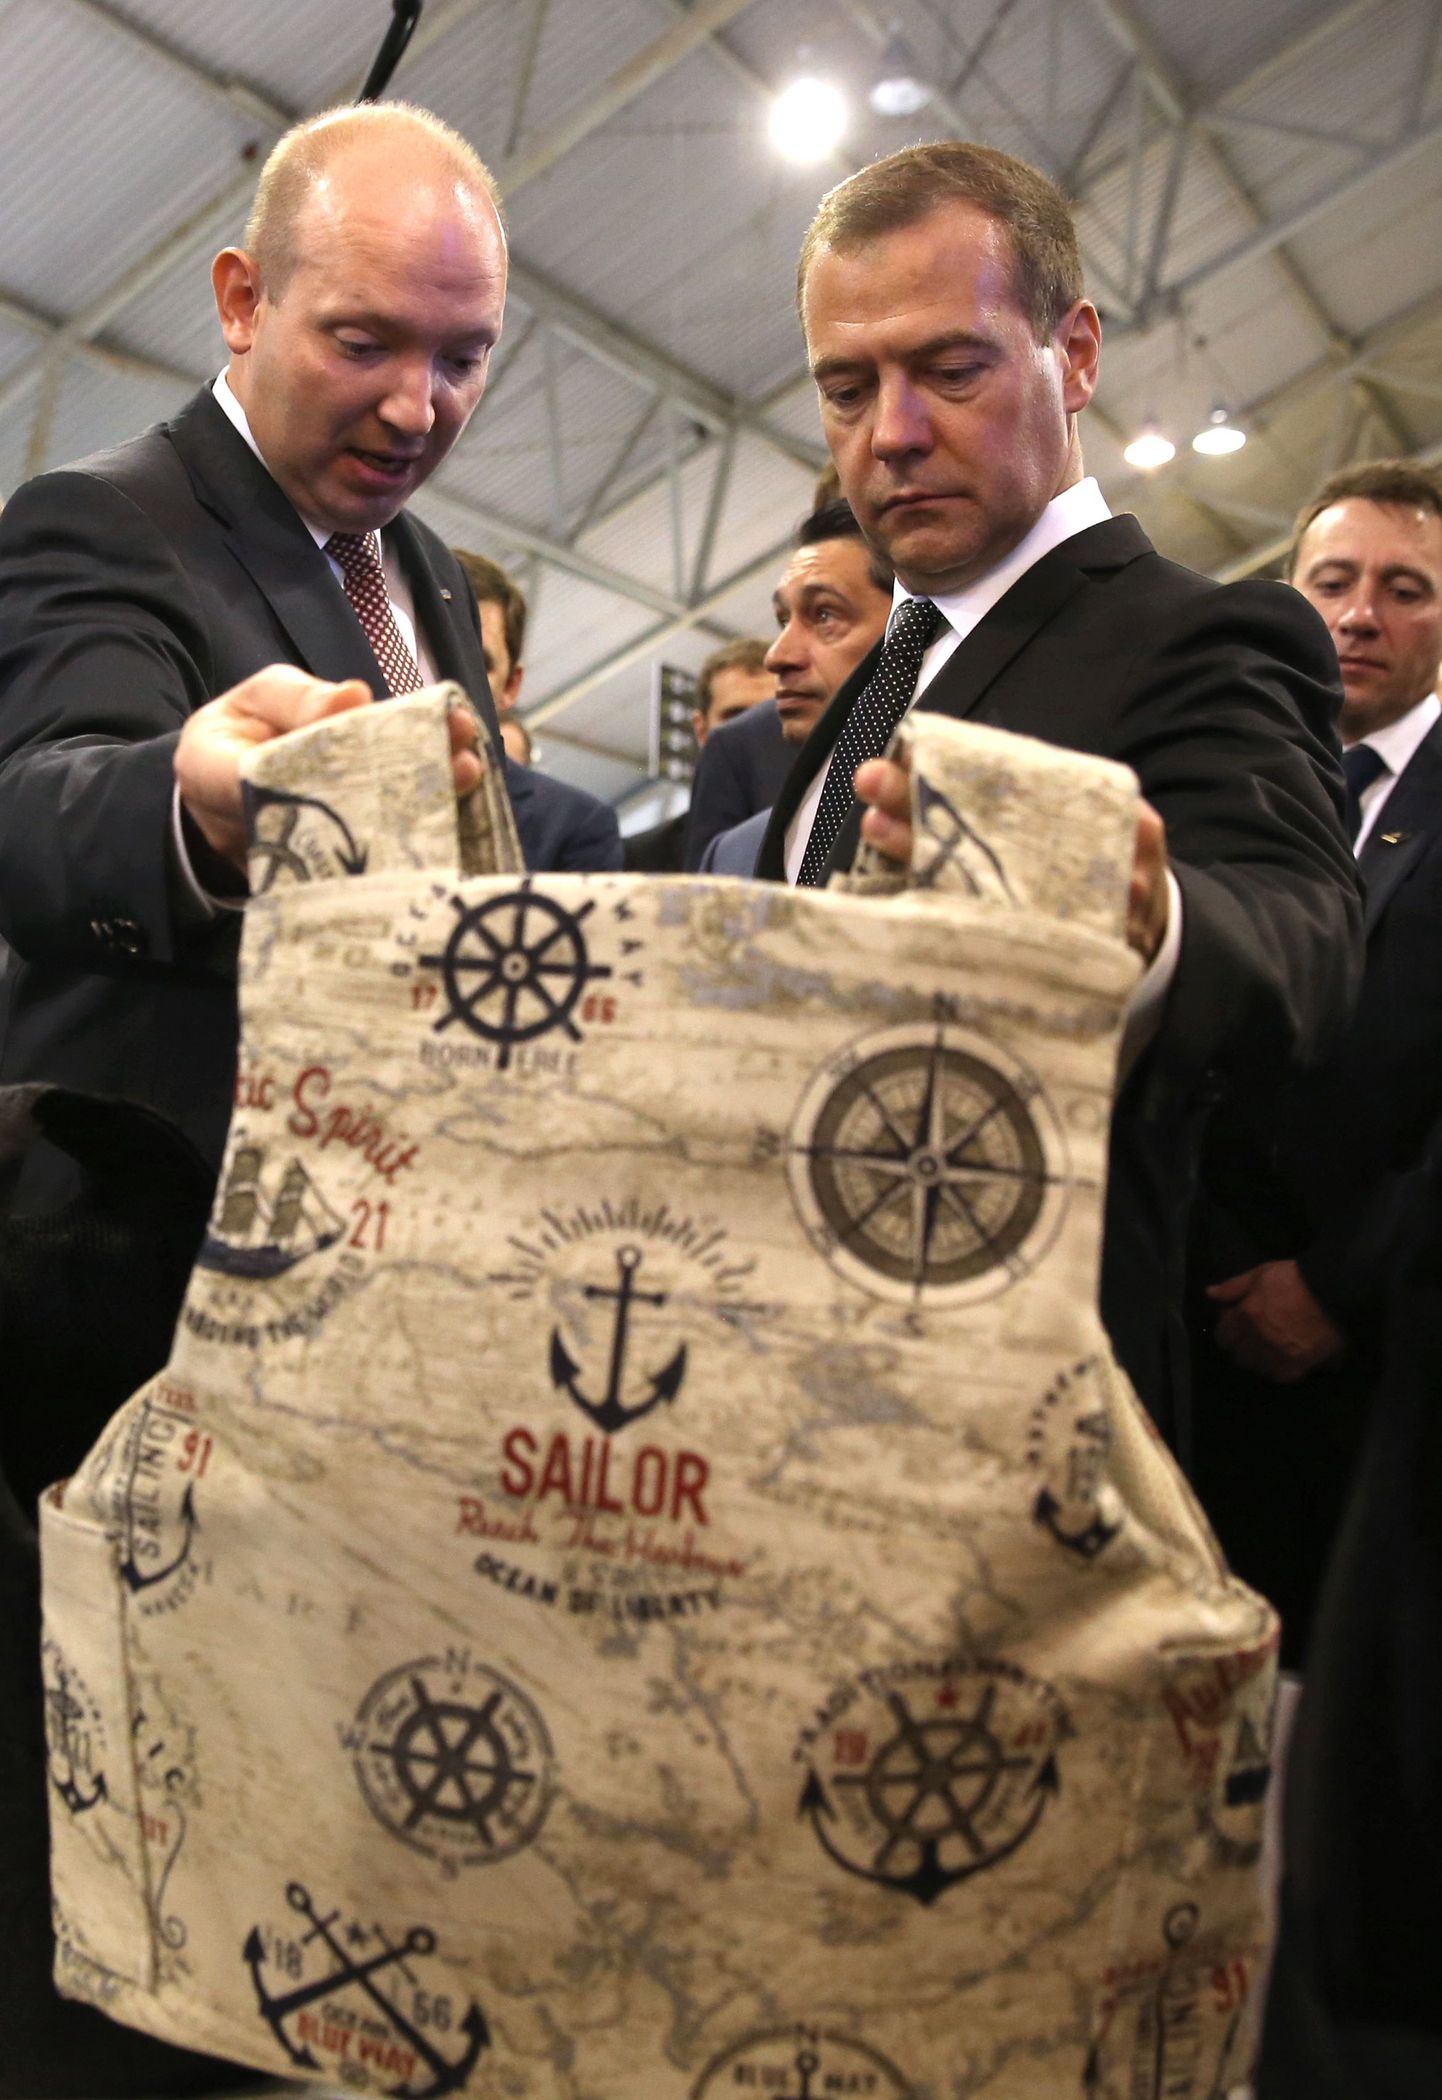 Venemaa peaminister Dmitri Medvedev (paremal) uurib Nižni Tagili relvamessil kuulivesti.